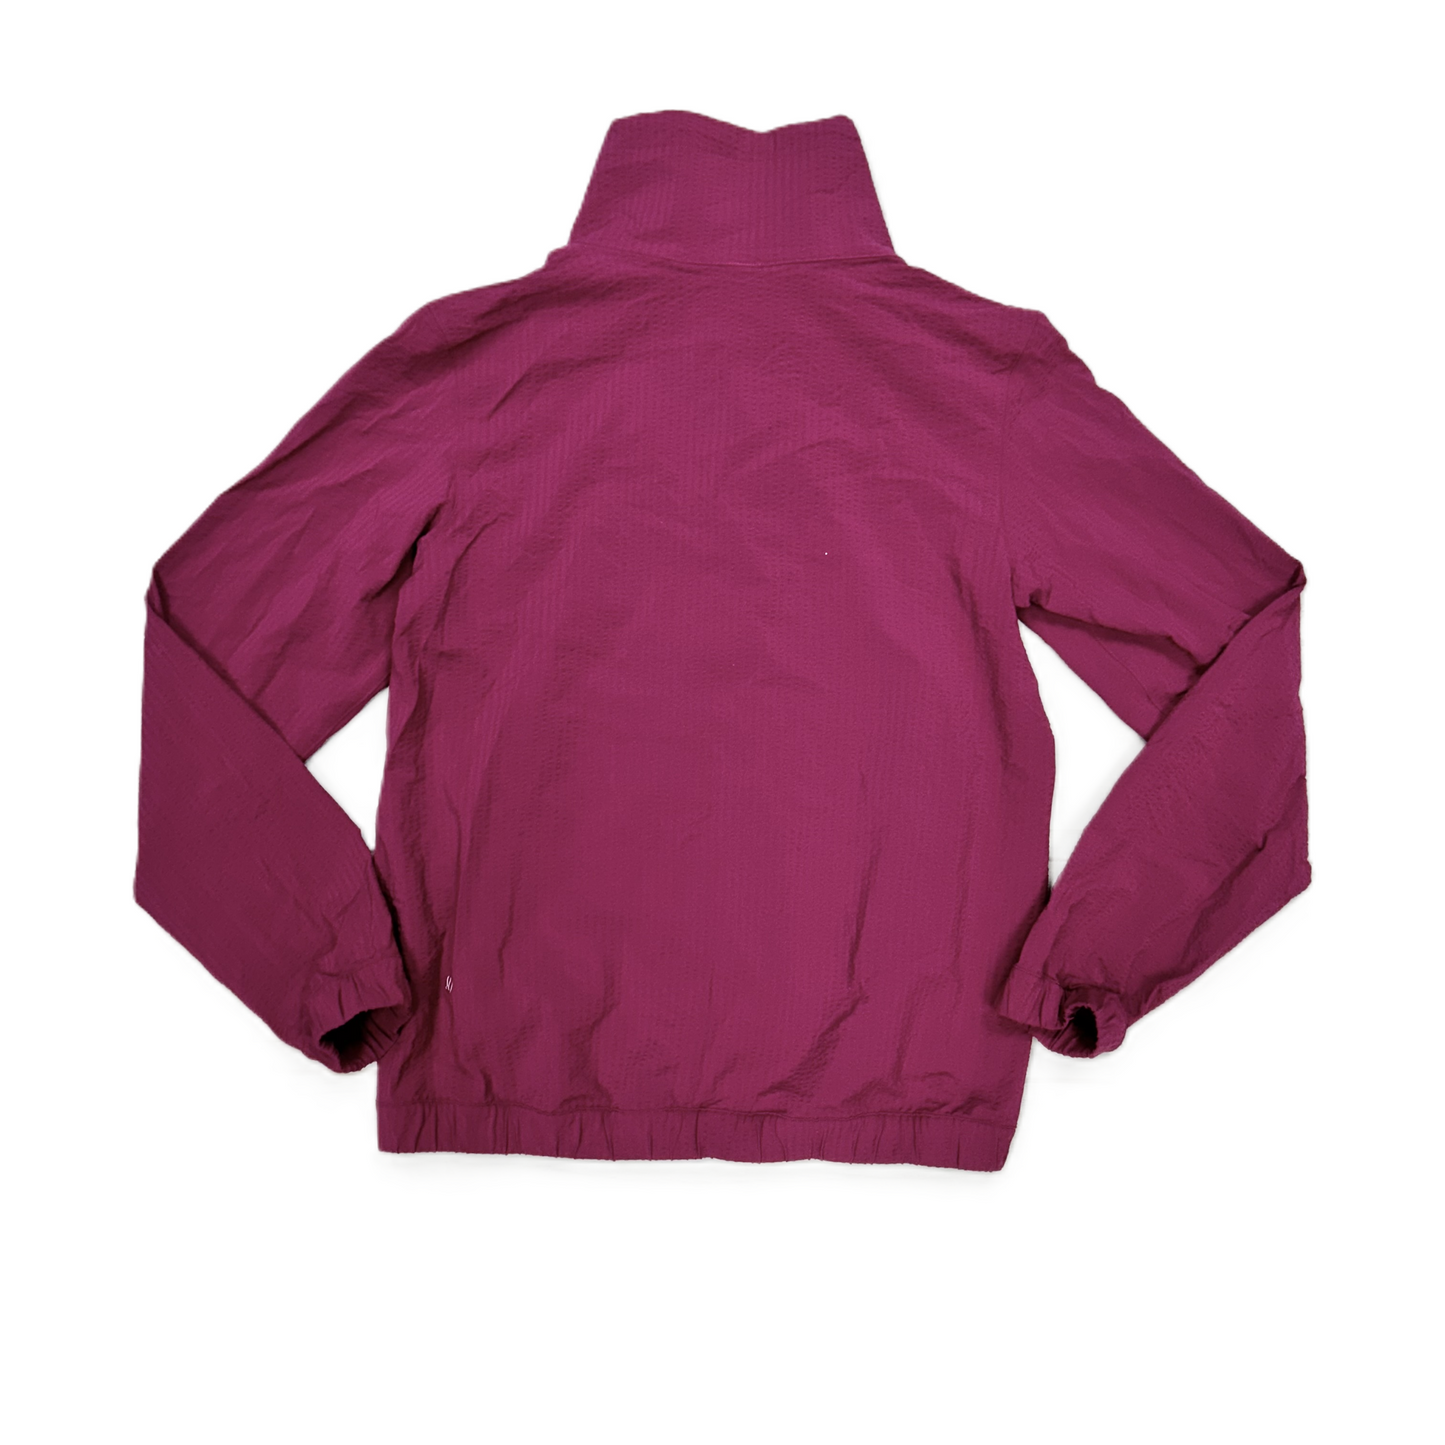 Athletic Jacket By Lululemon  Size: Xs